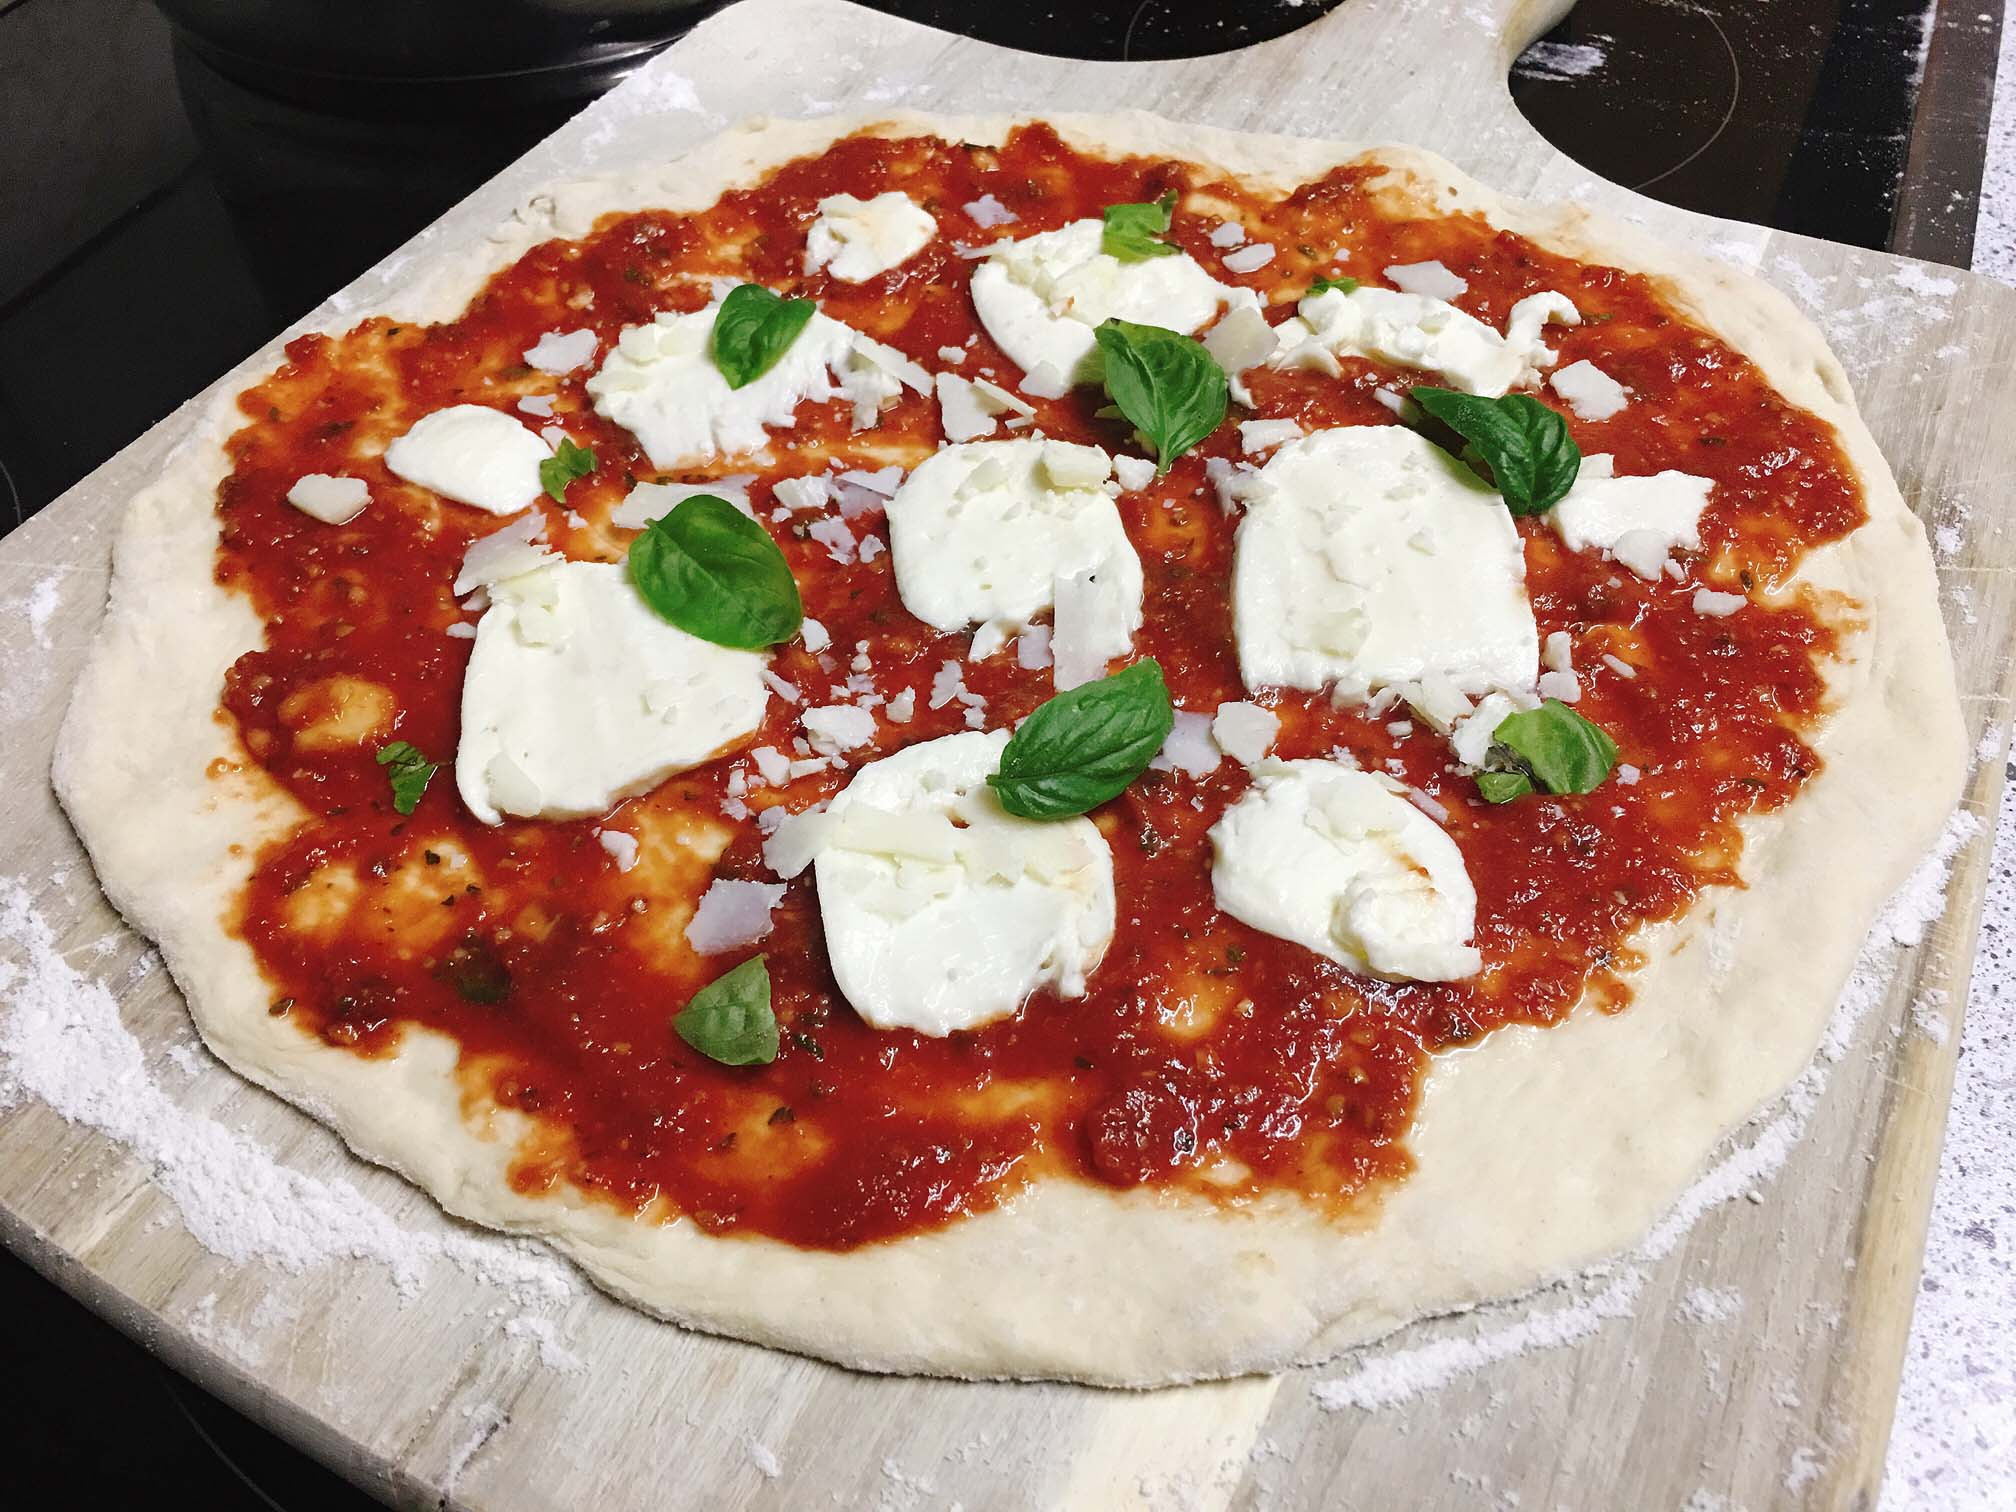 Italian Pizza Dough Recipe
 Authentic Italian Pizza Dough Recipe